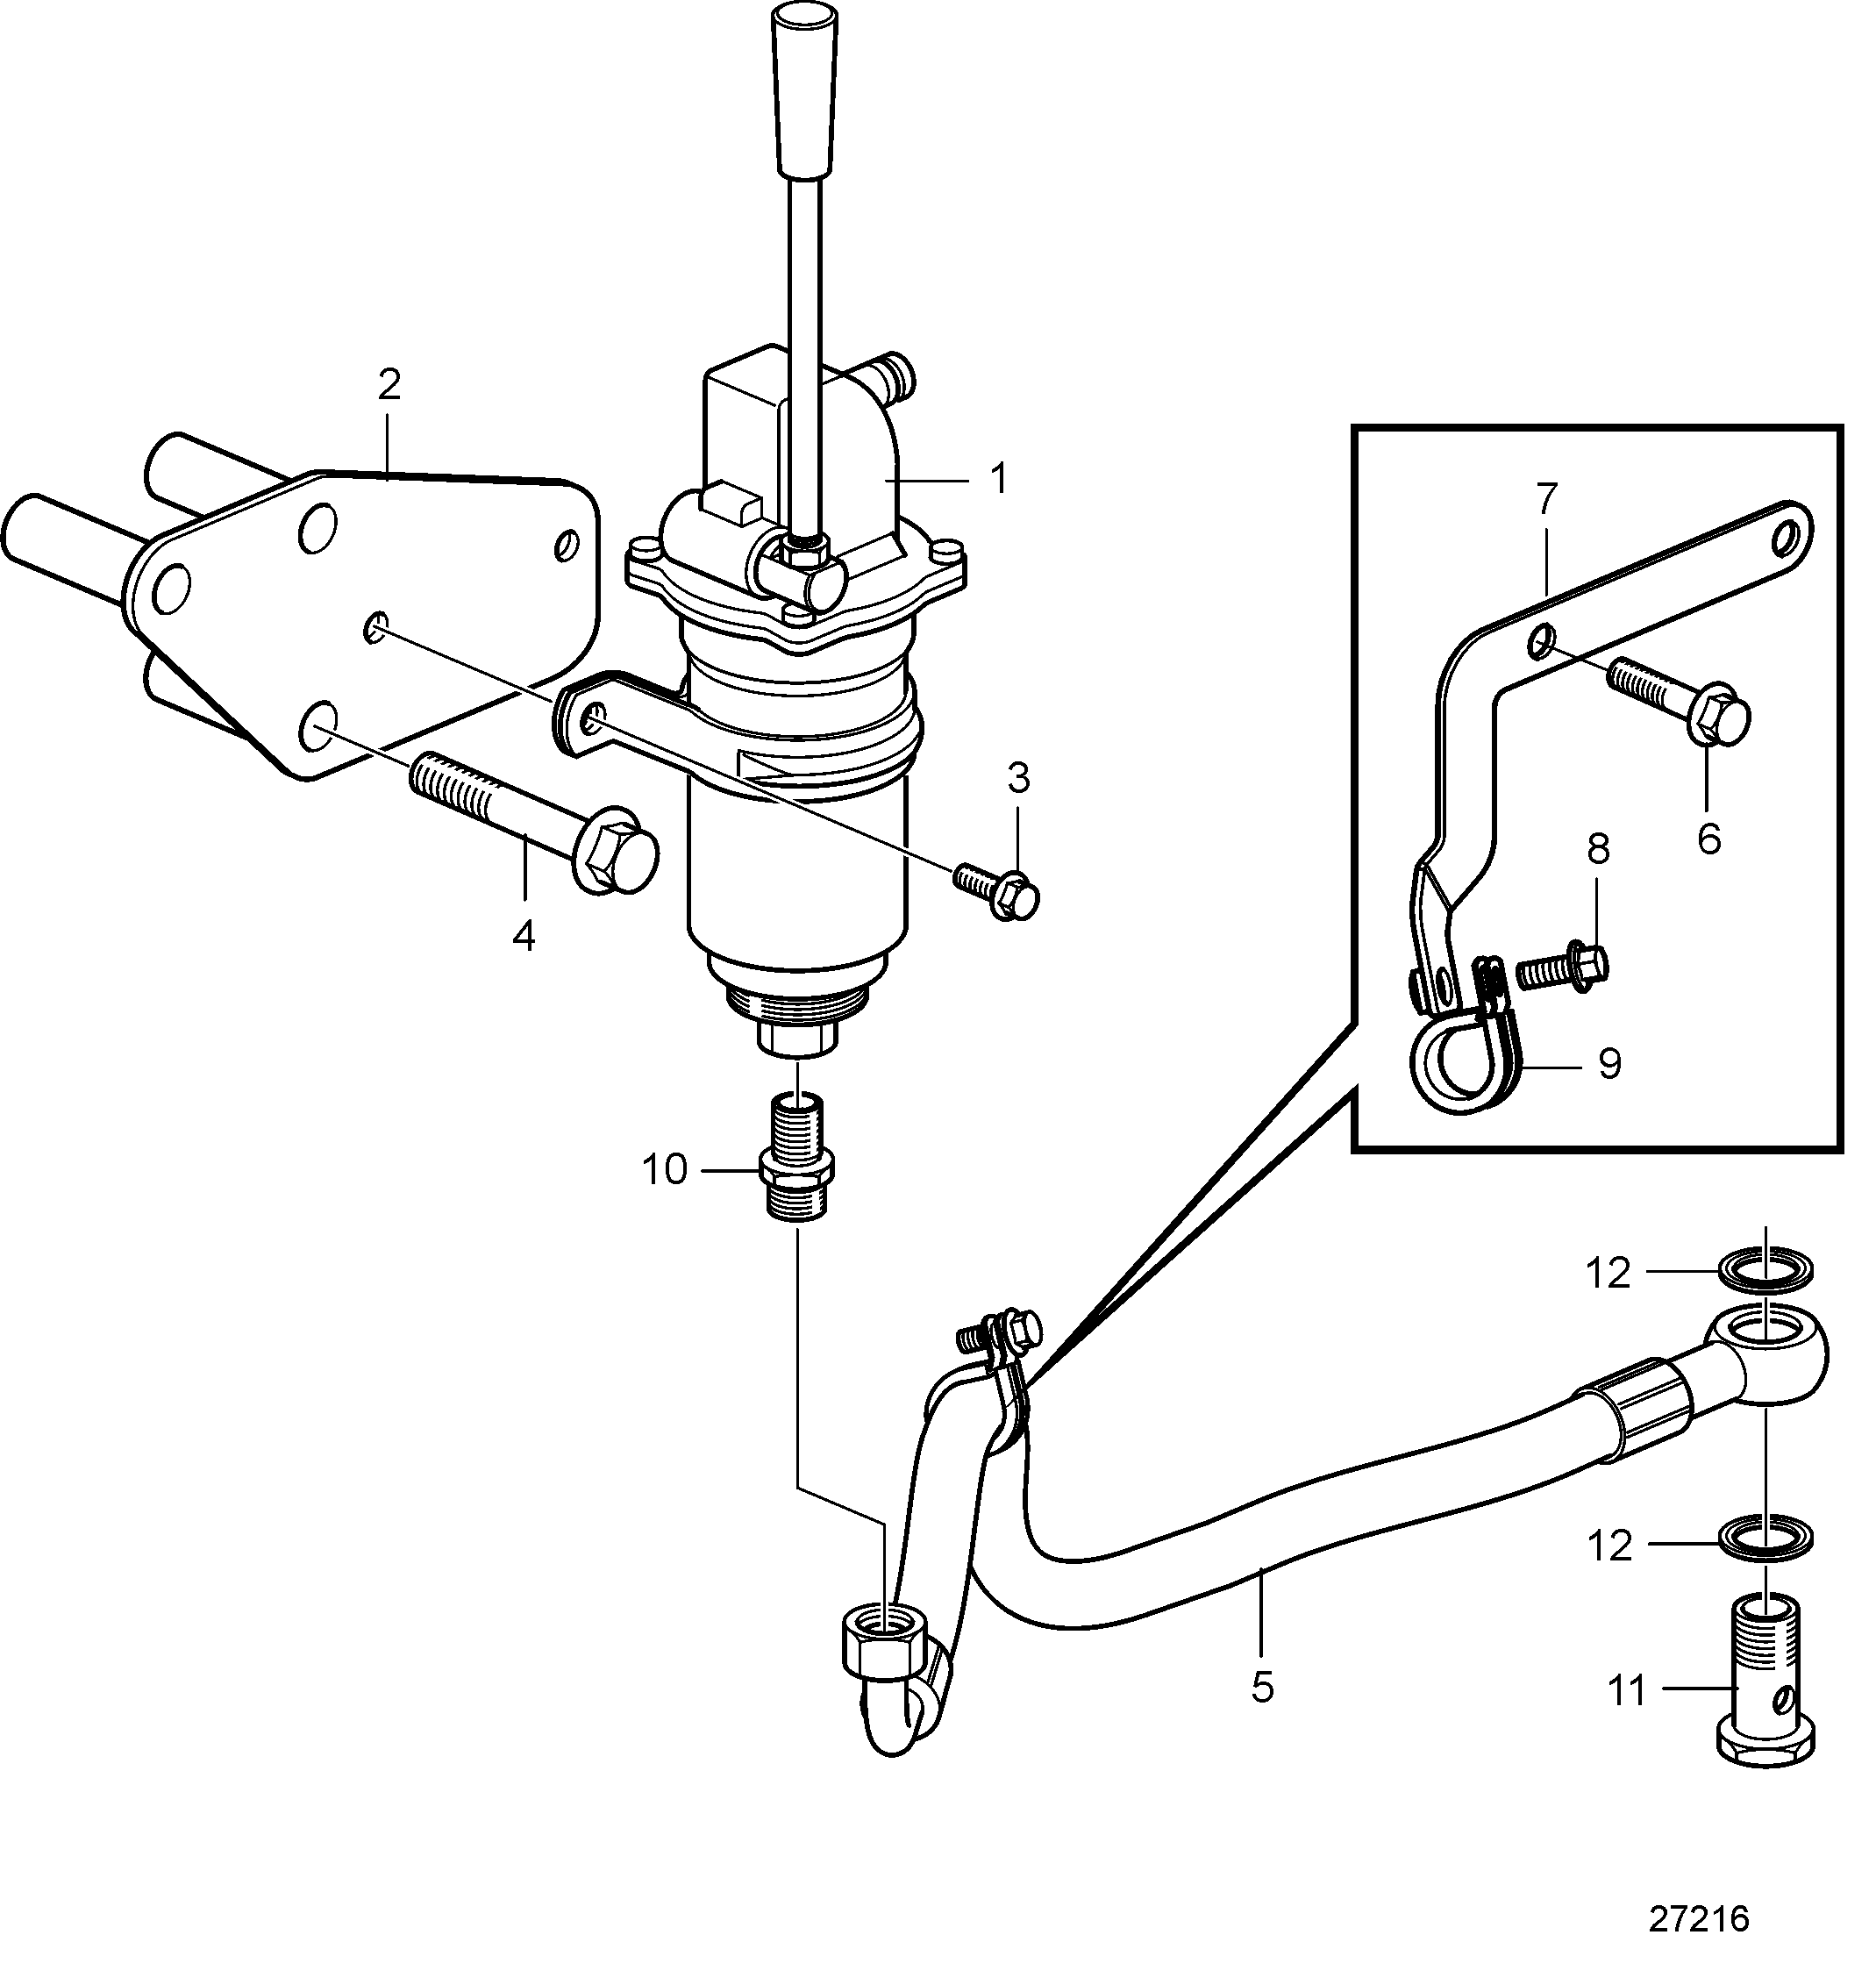 Pompe de vidange d'huile et pièces de montage, montée sur moteur pour carter d'huile en plastique